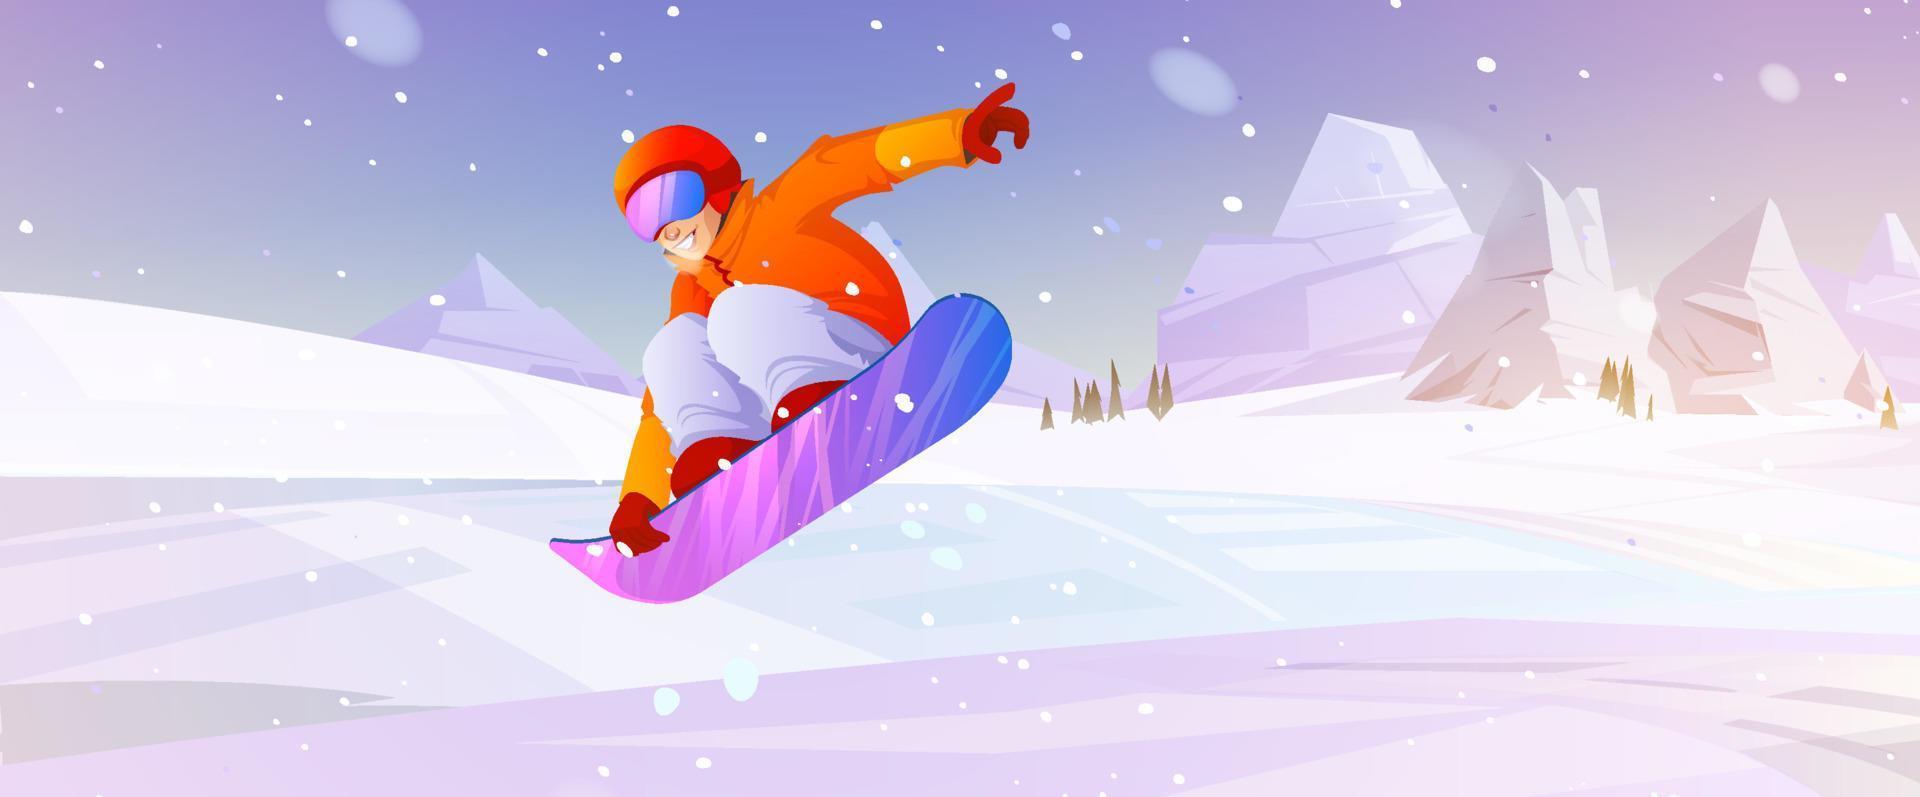 extrem åka snowboard vinter- sport utomhus- aktivitet vektor